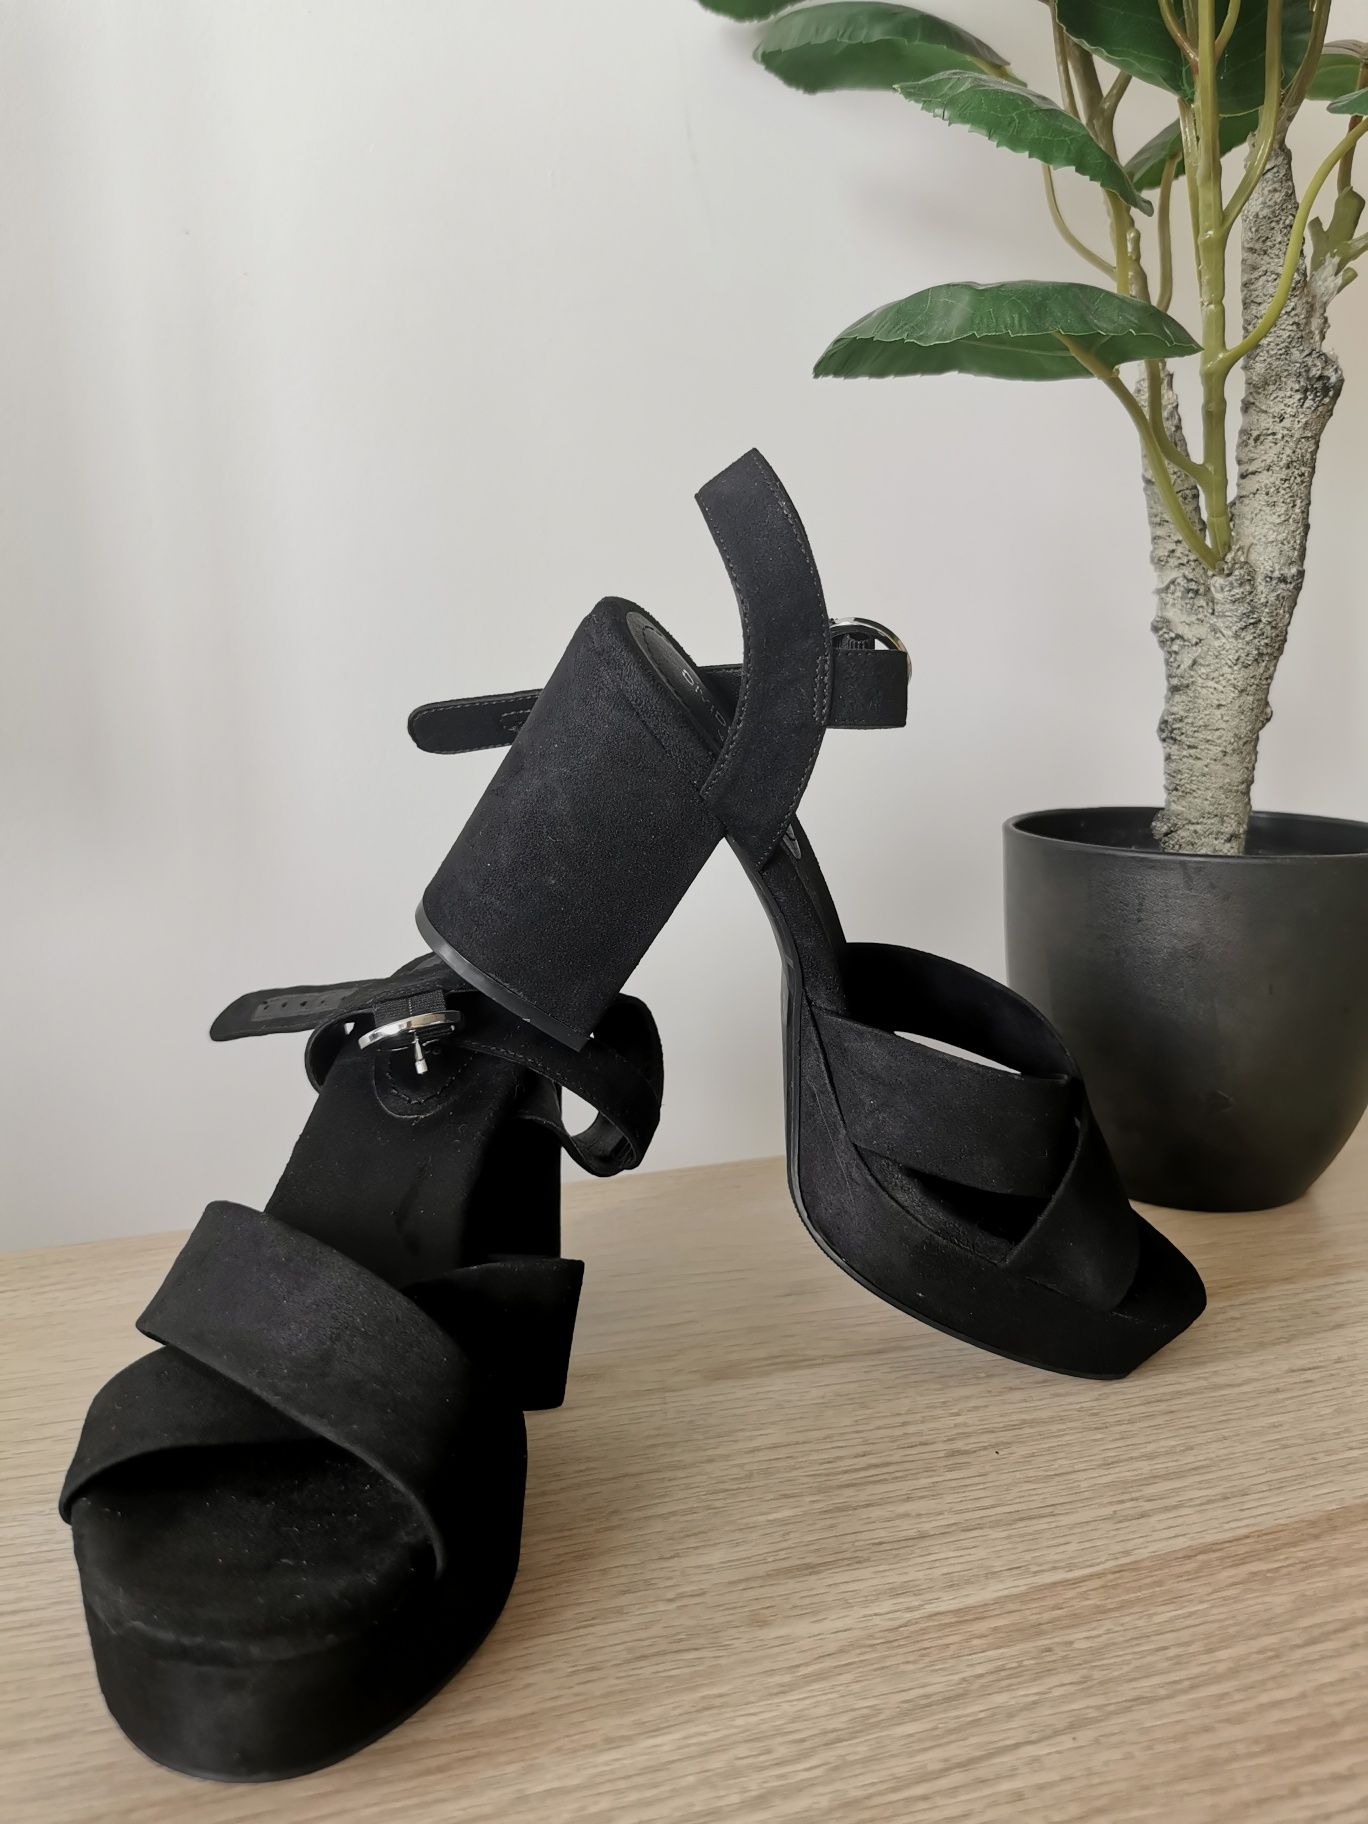 Sandale H&M Noi, negre, toc gros si platforma